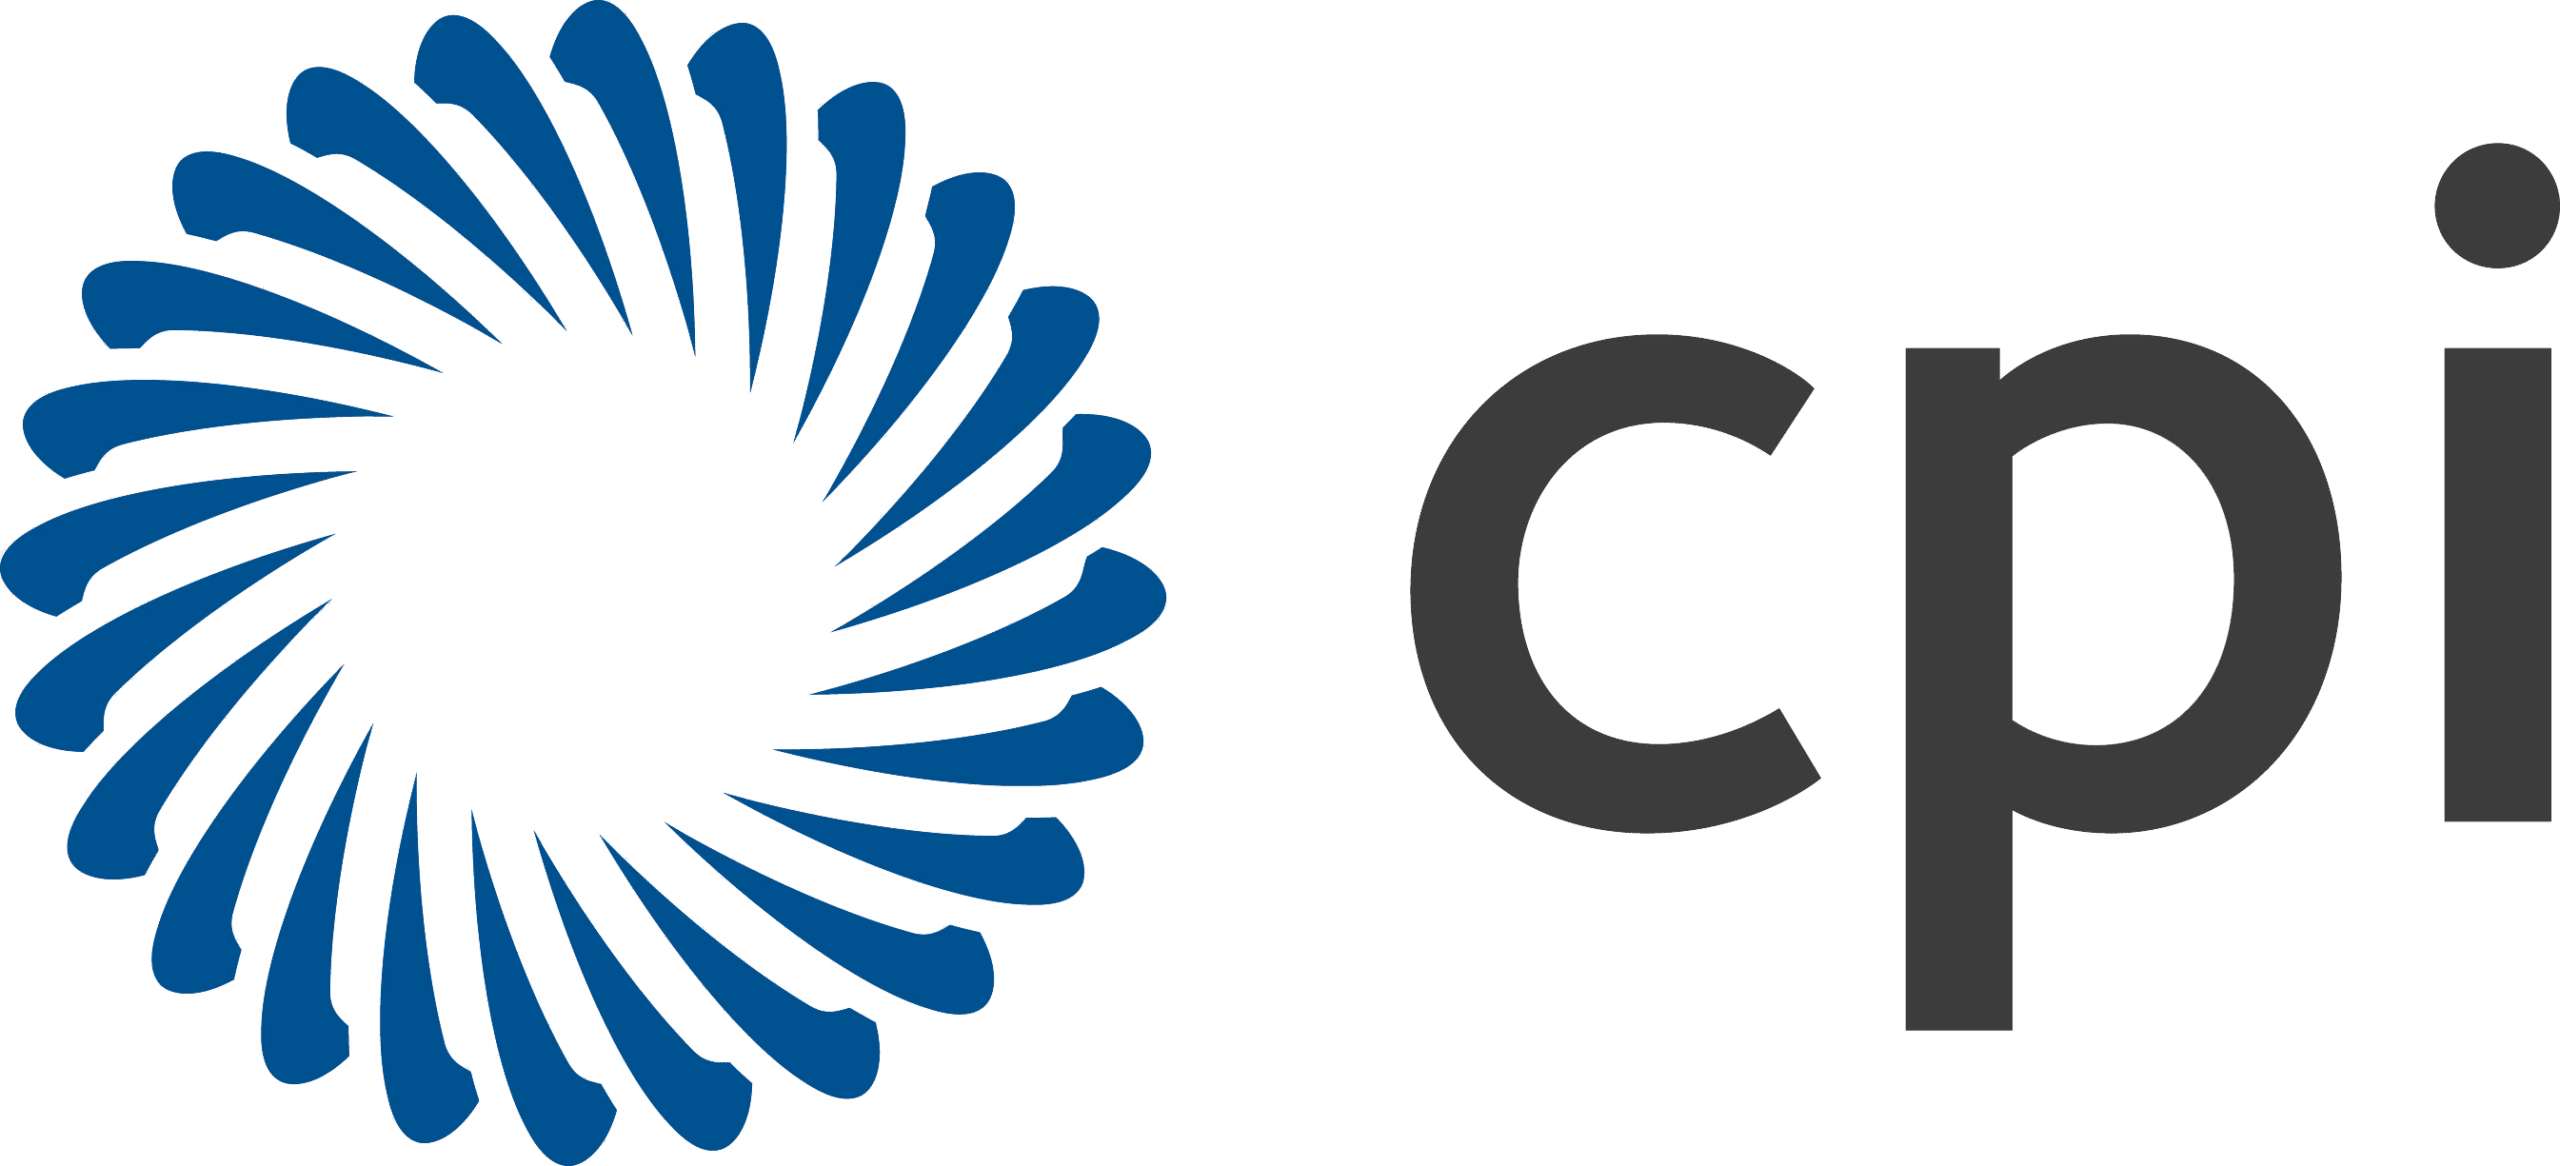 Centre for Process Innovation (CPI) logo